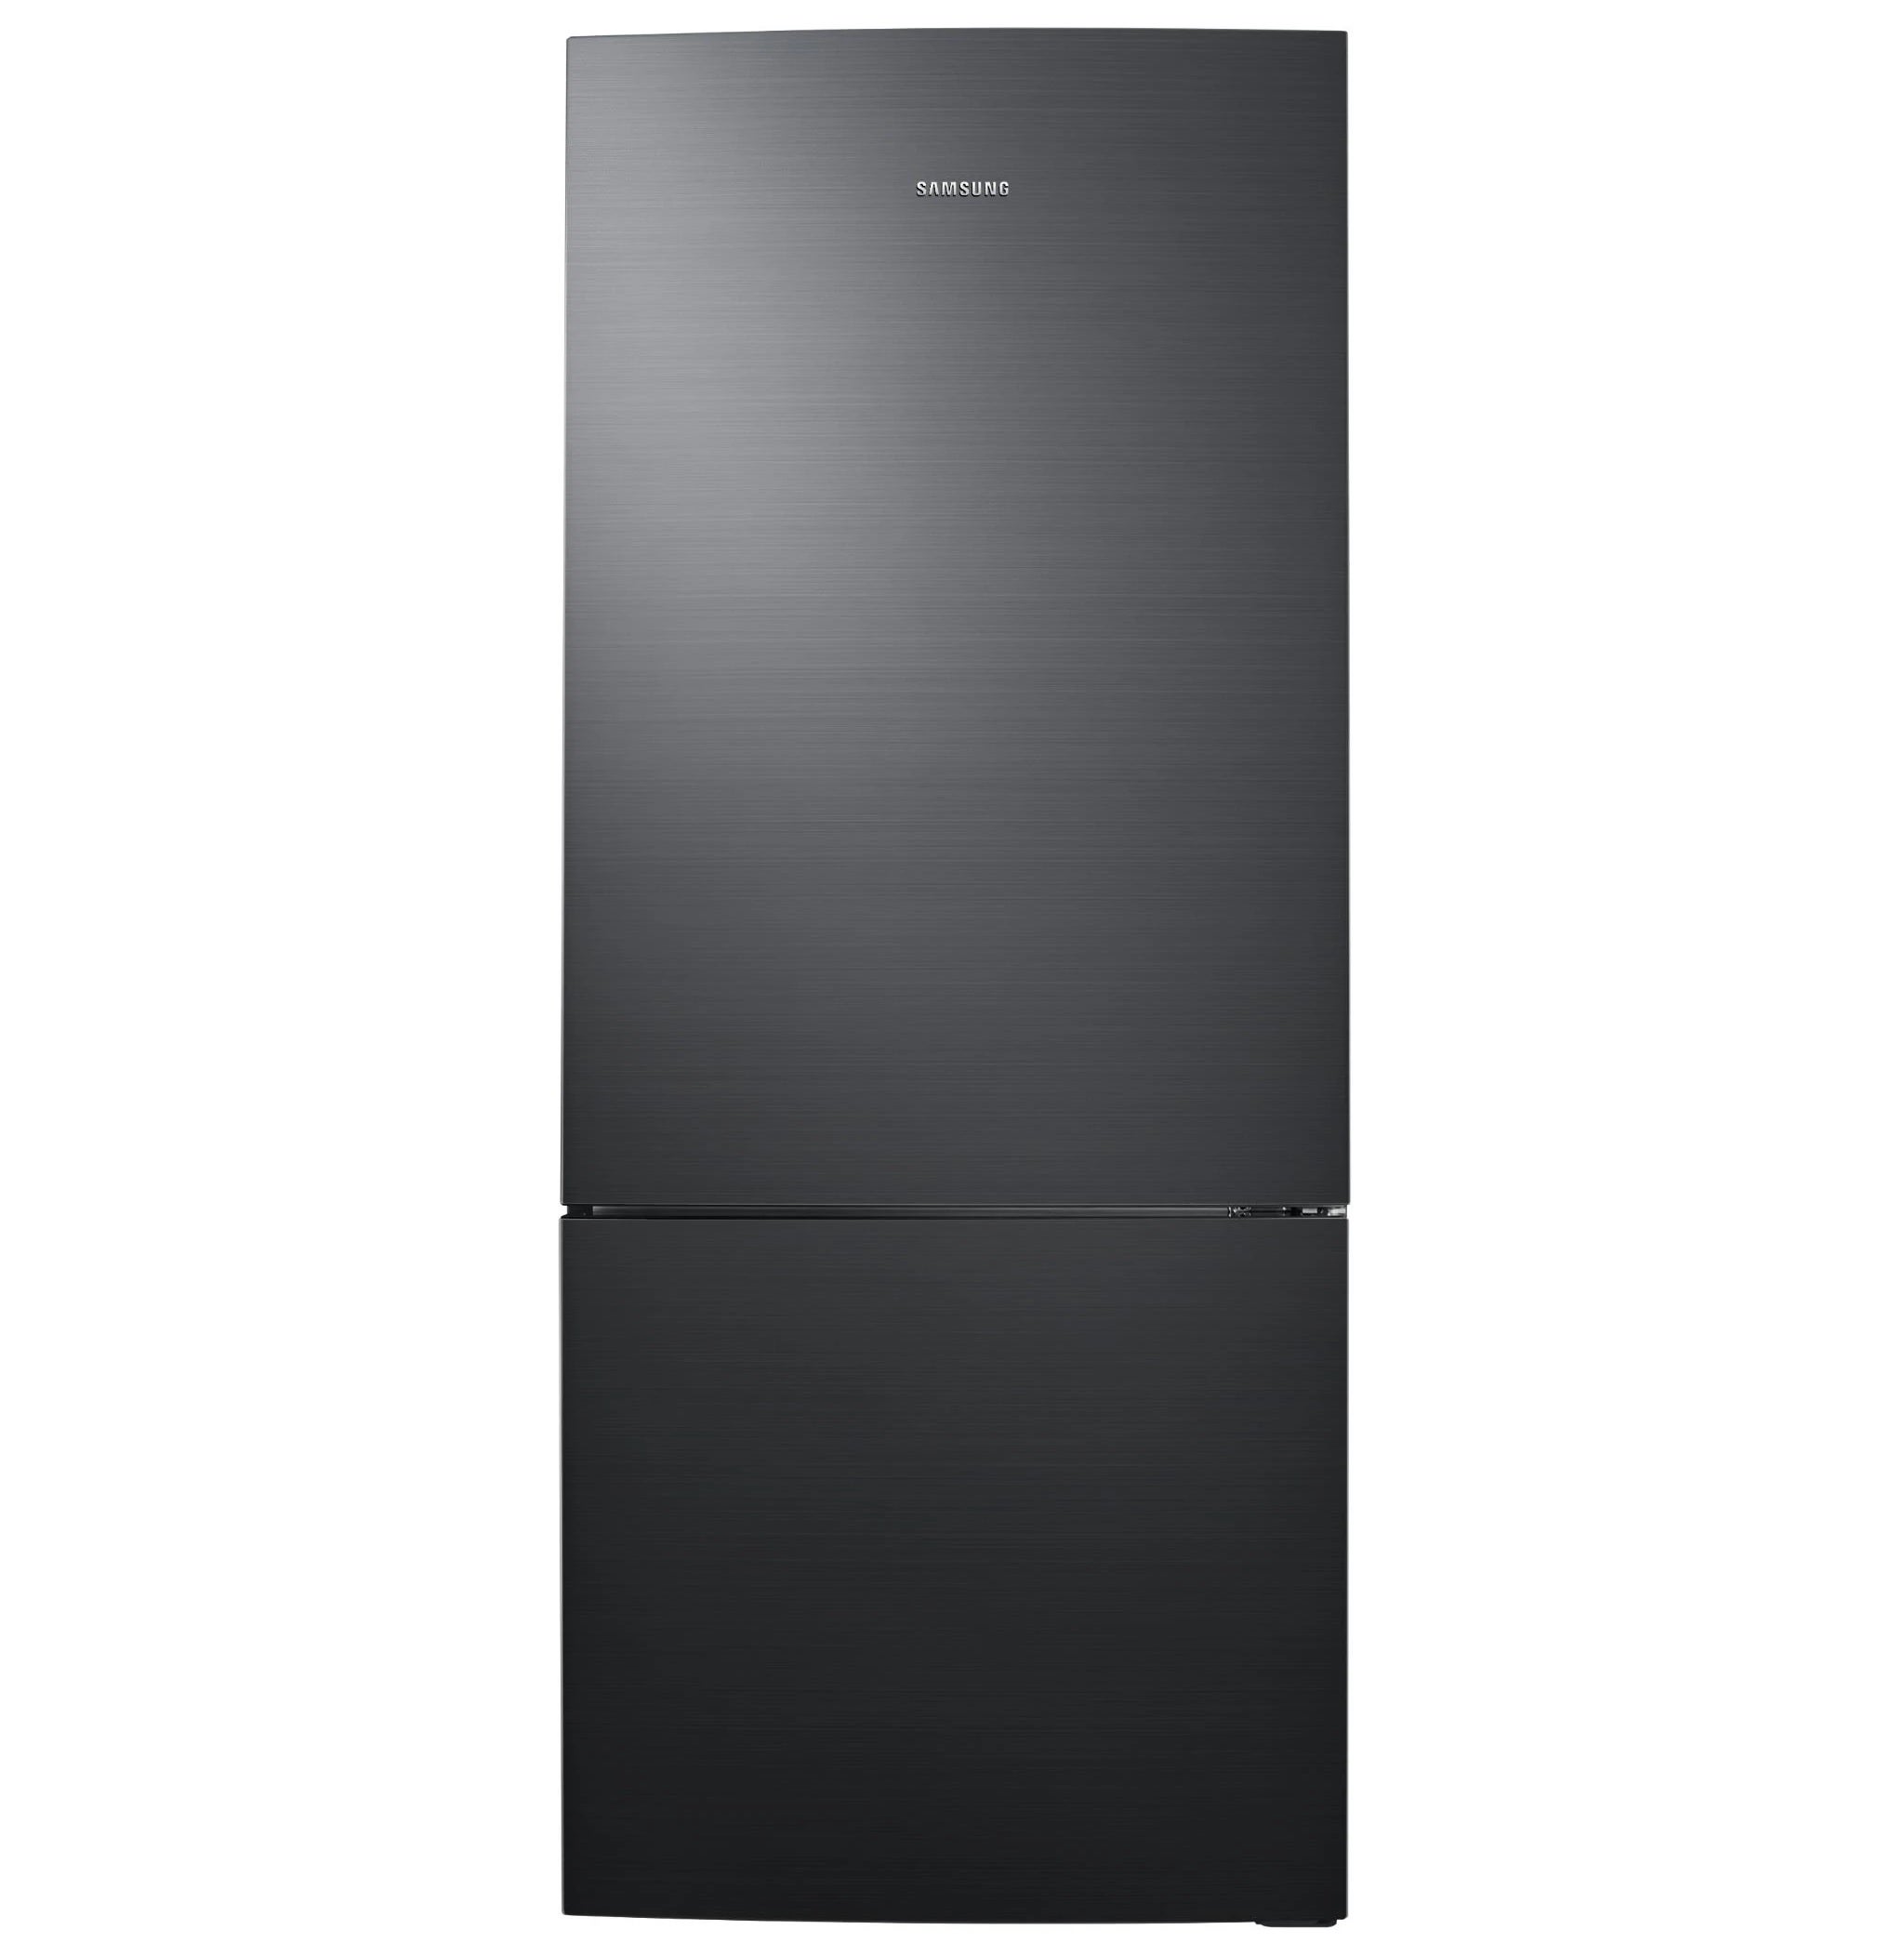 Samsung SRL459MB Refrigerator